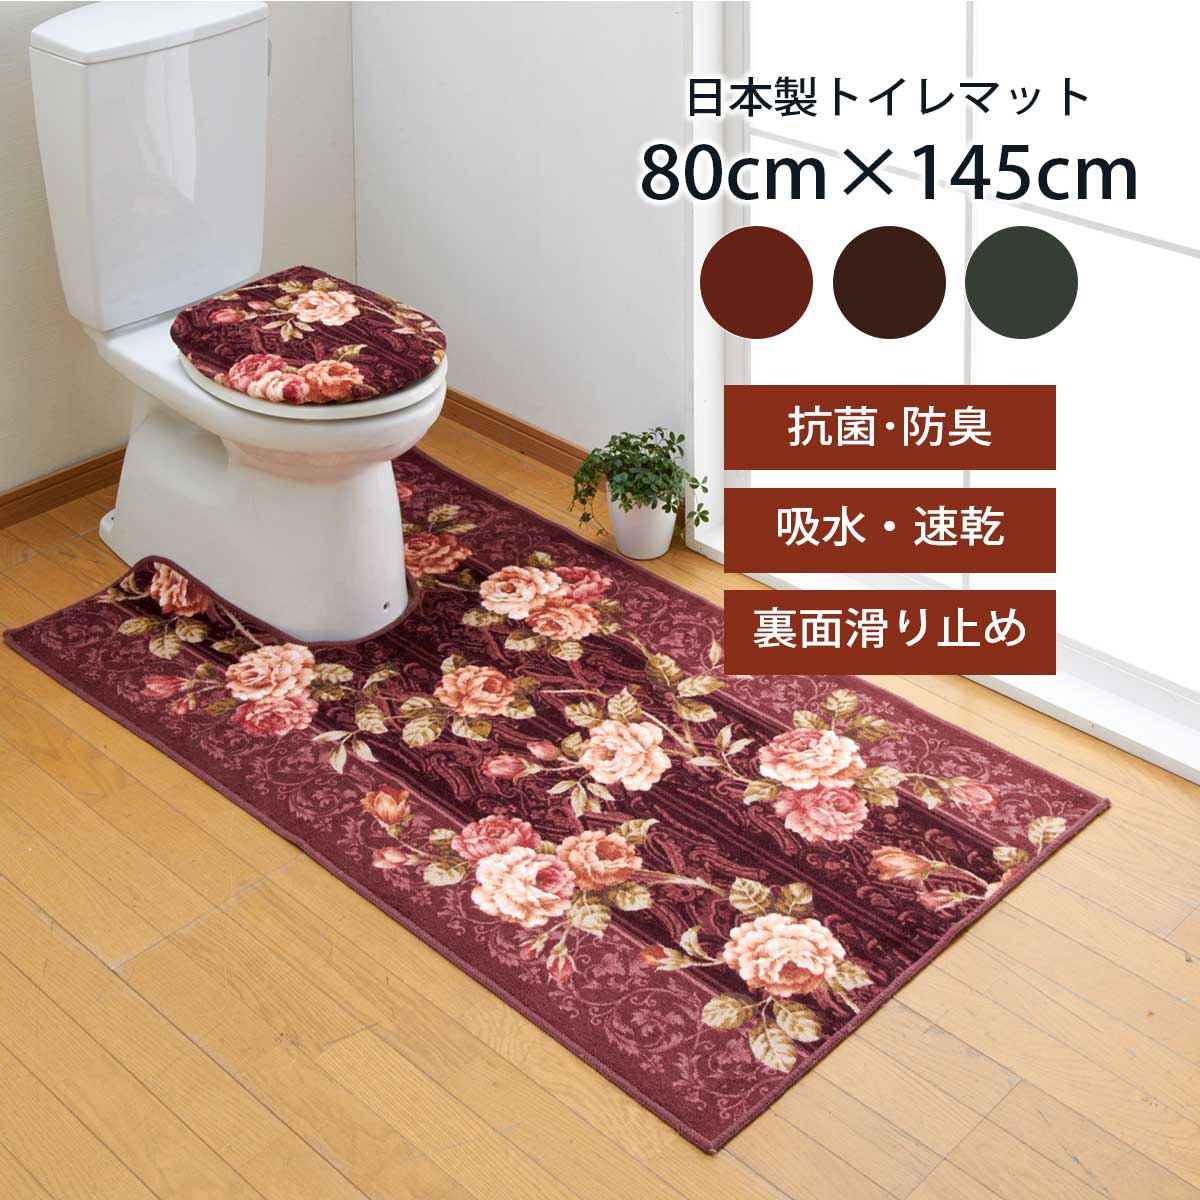 トイレマット 単品 80cm×145cm バラ・ベルサイユ 日本製 カット